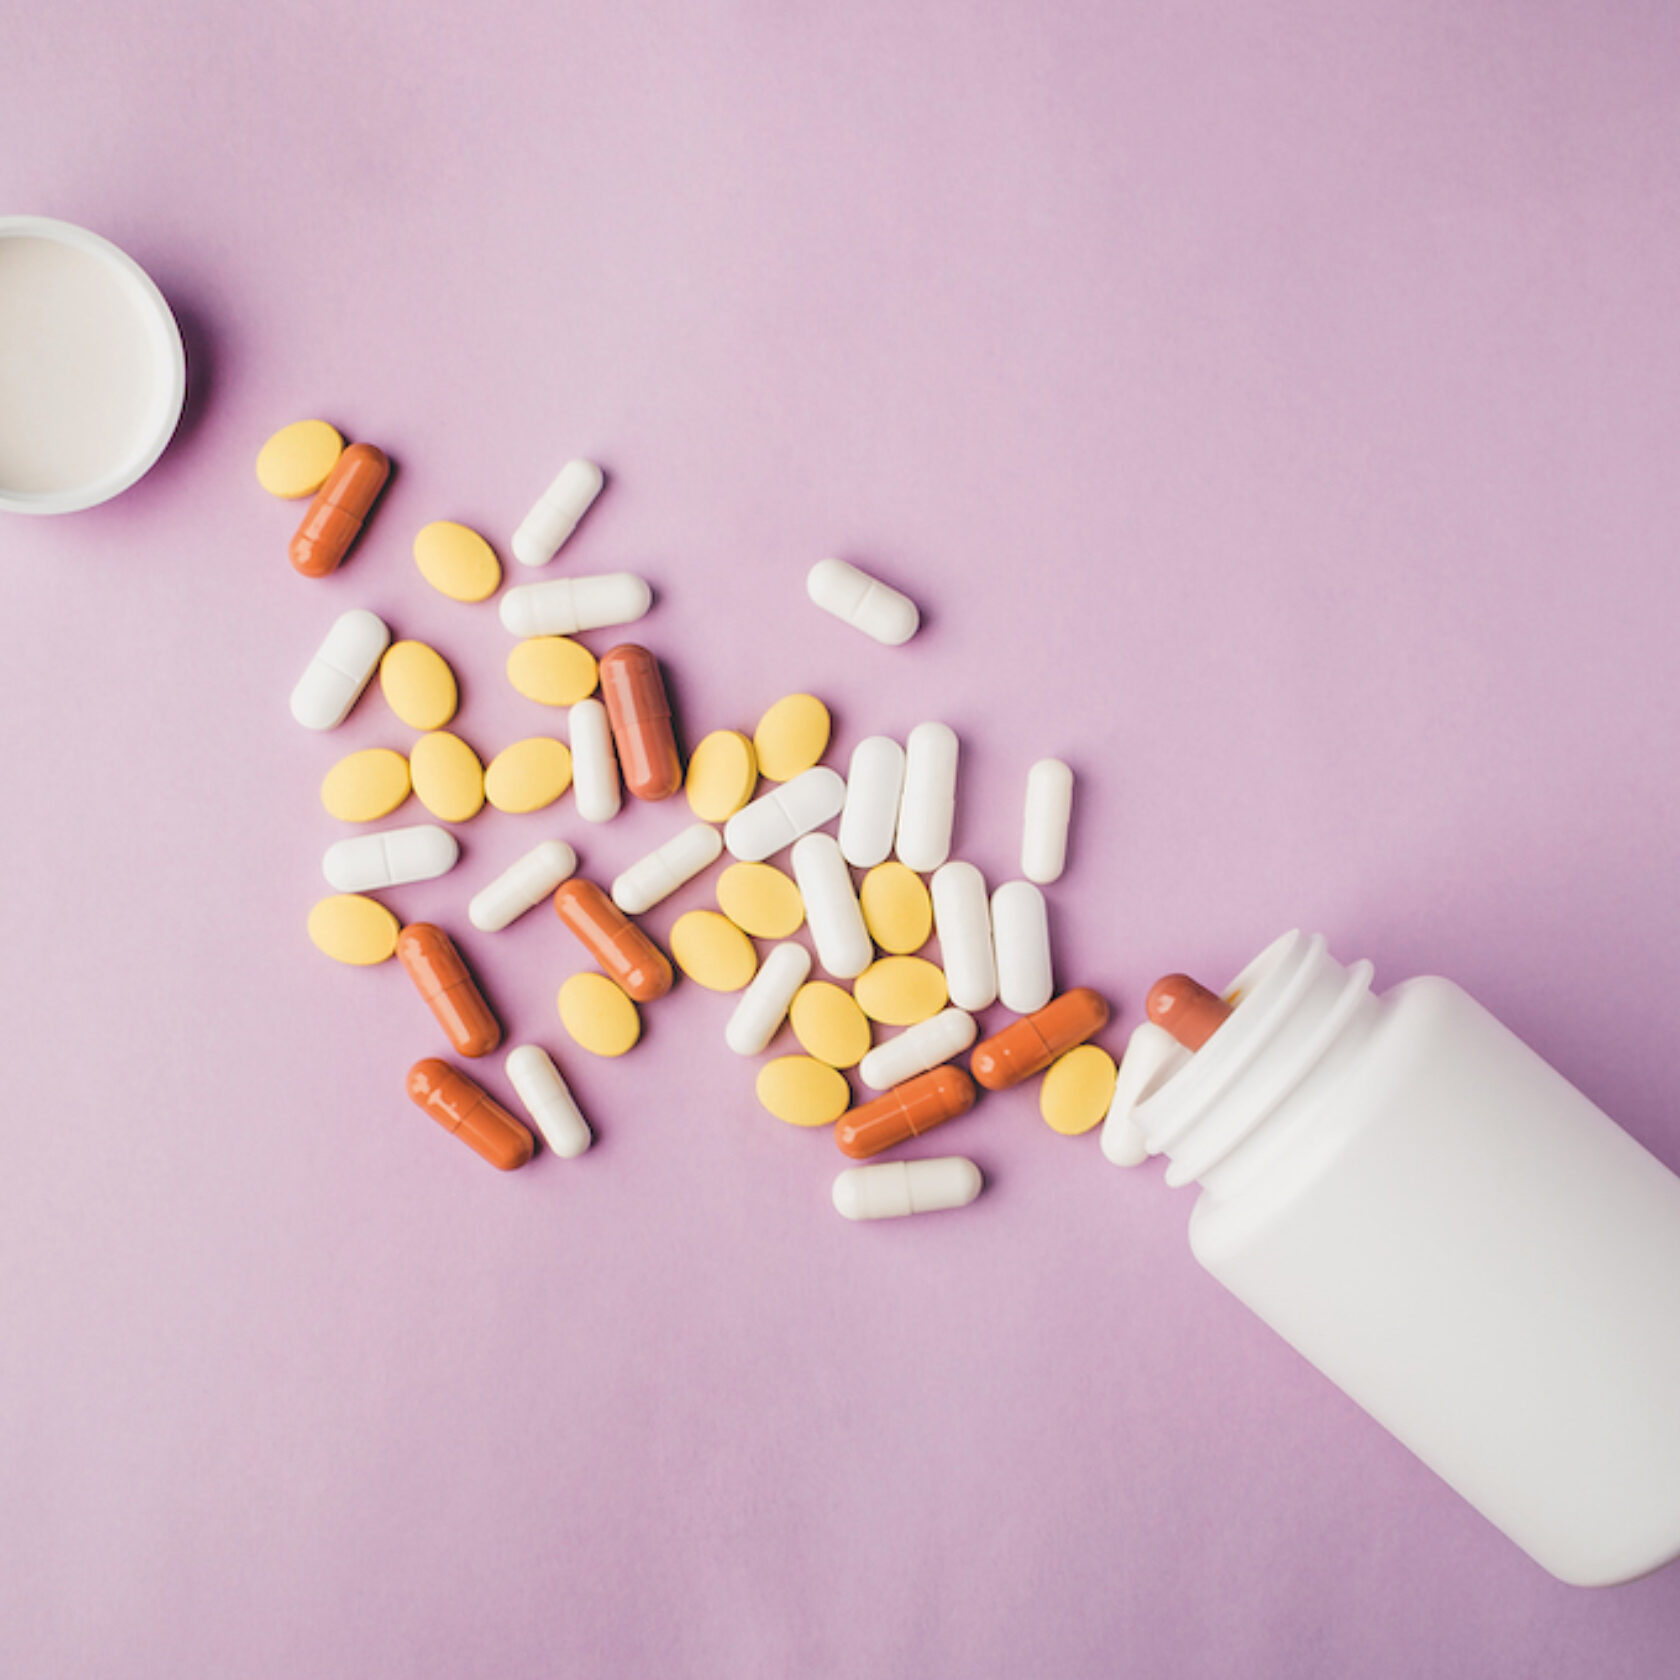 Aus einer Medikamentenflasche sind verschiedenfarbige Tabletten und Kapseln mit verschiedener Form ausgeschüttet